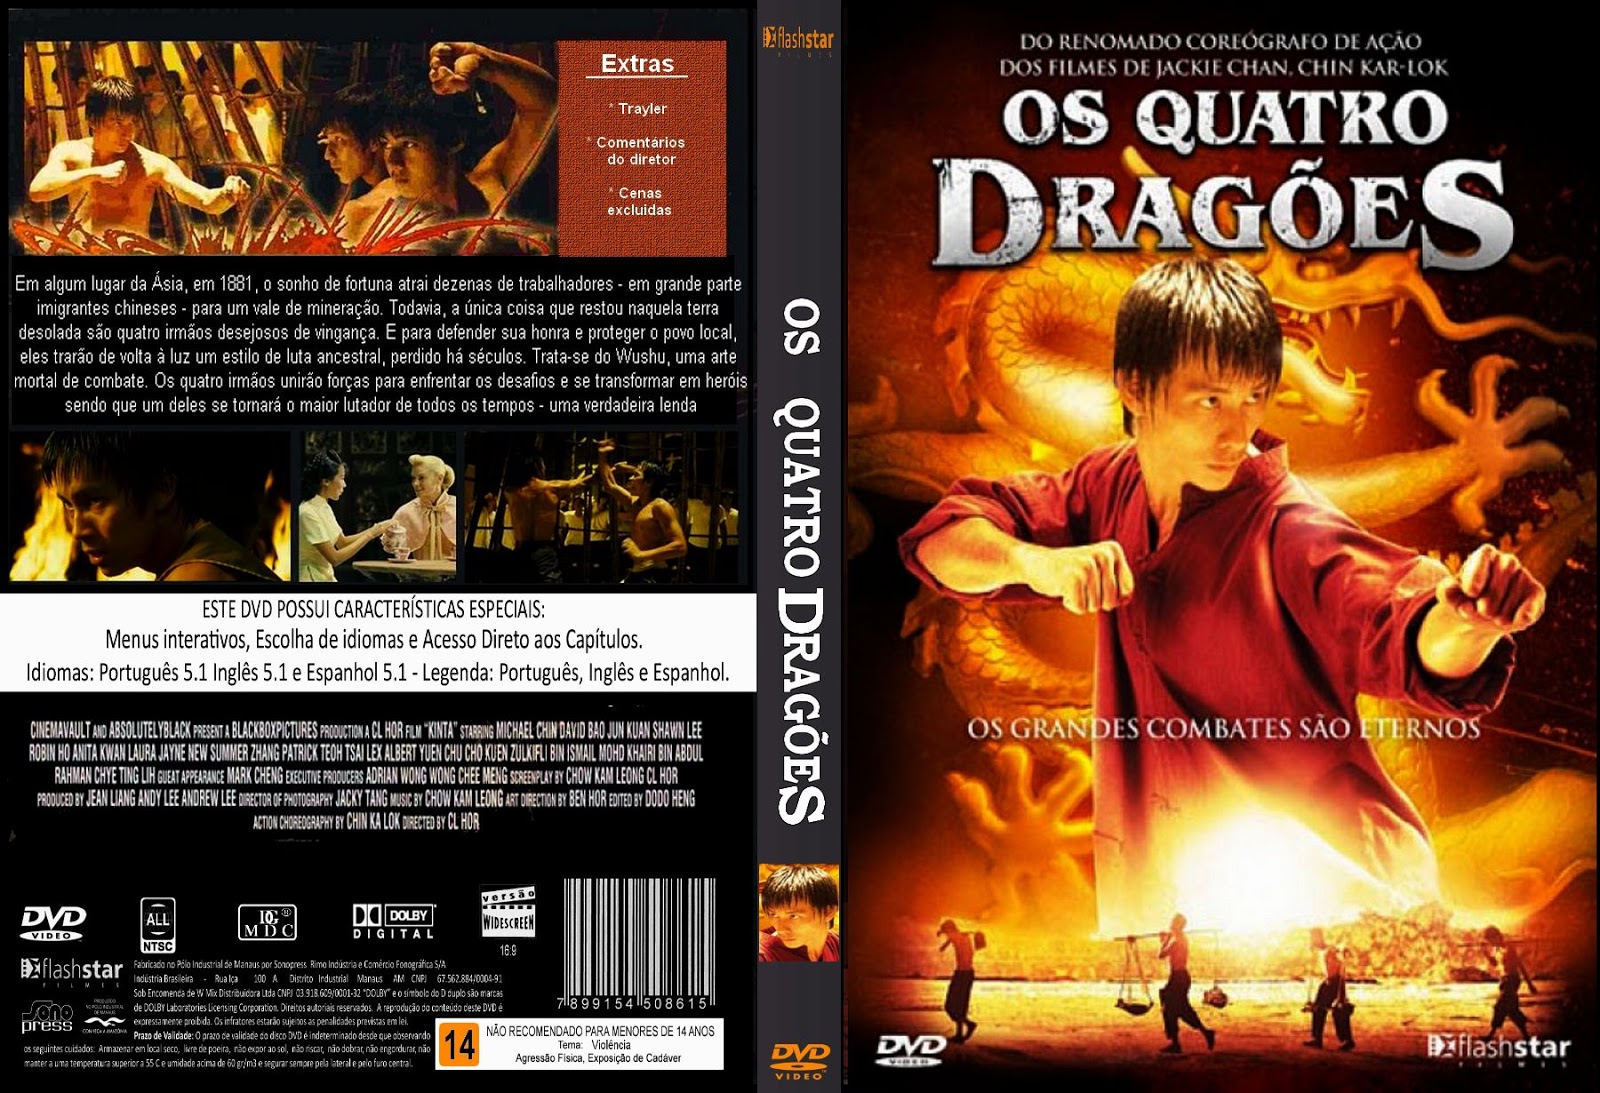 Os Quatro Dragões - Assistir filme completo dublado - Dailymotion Video